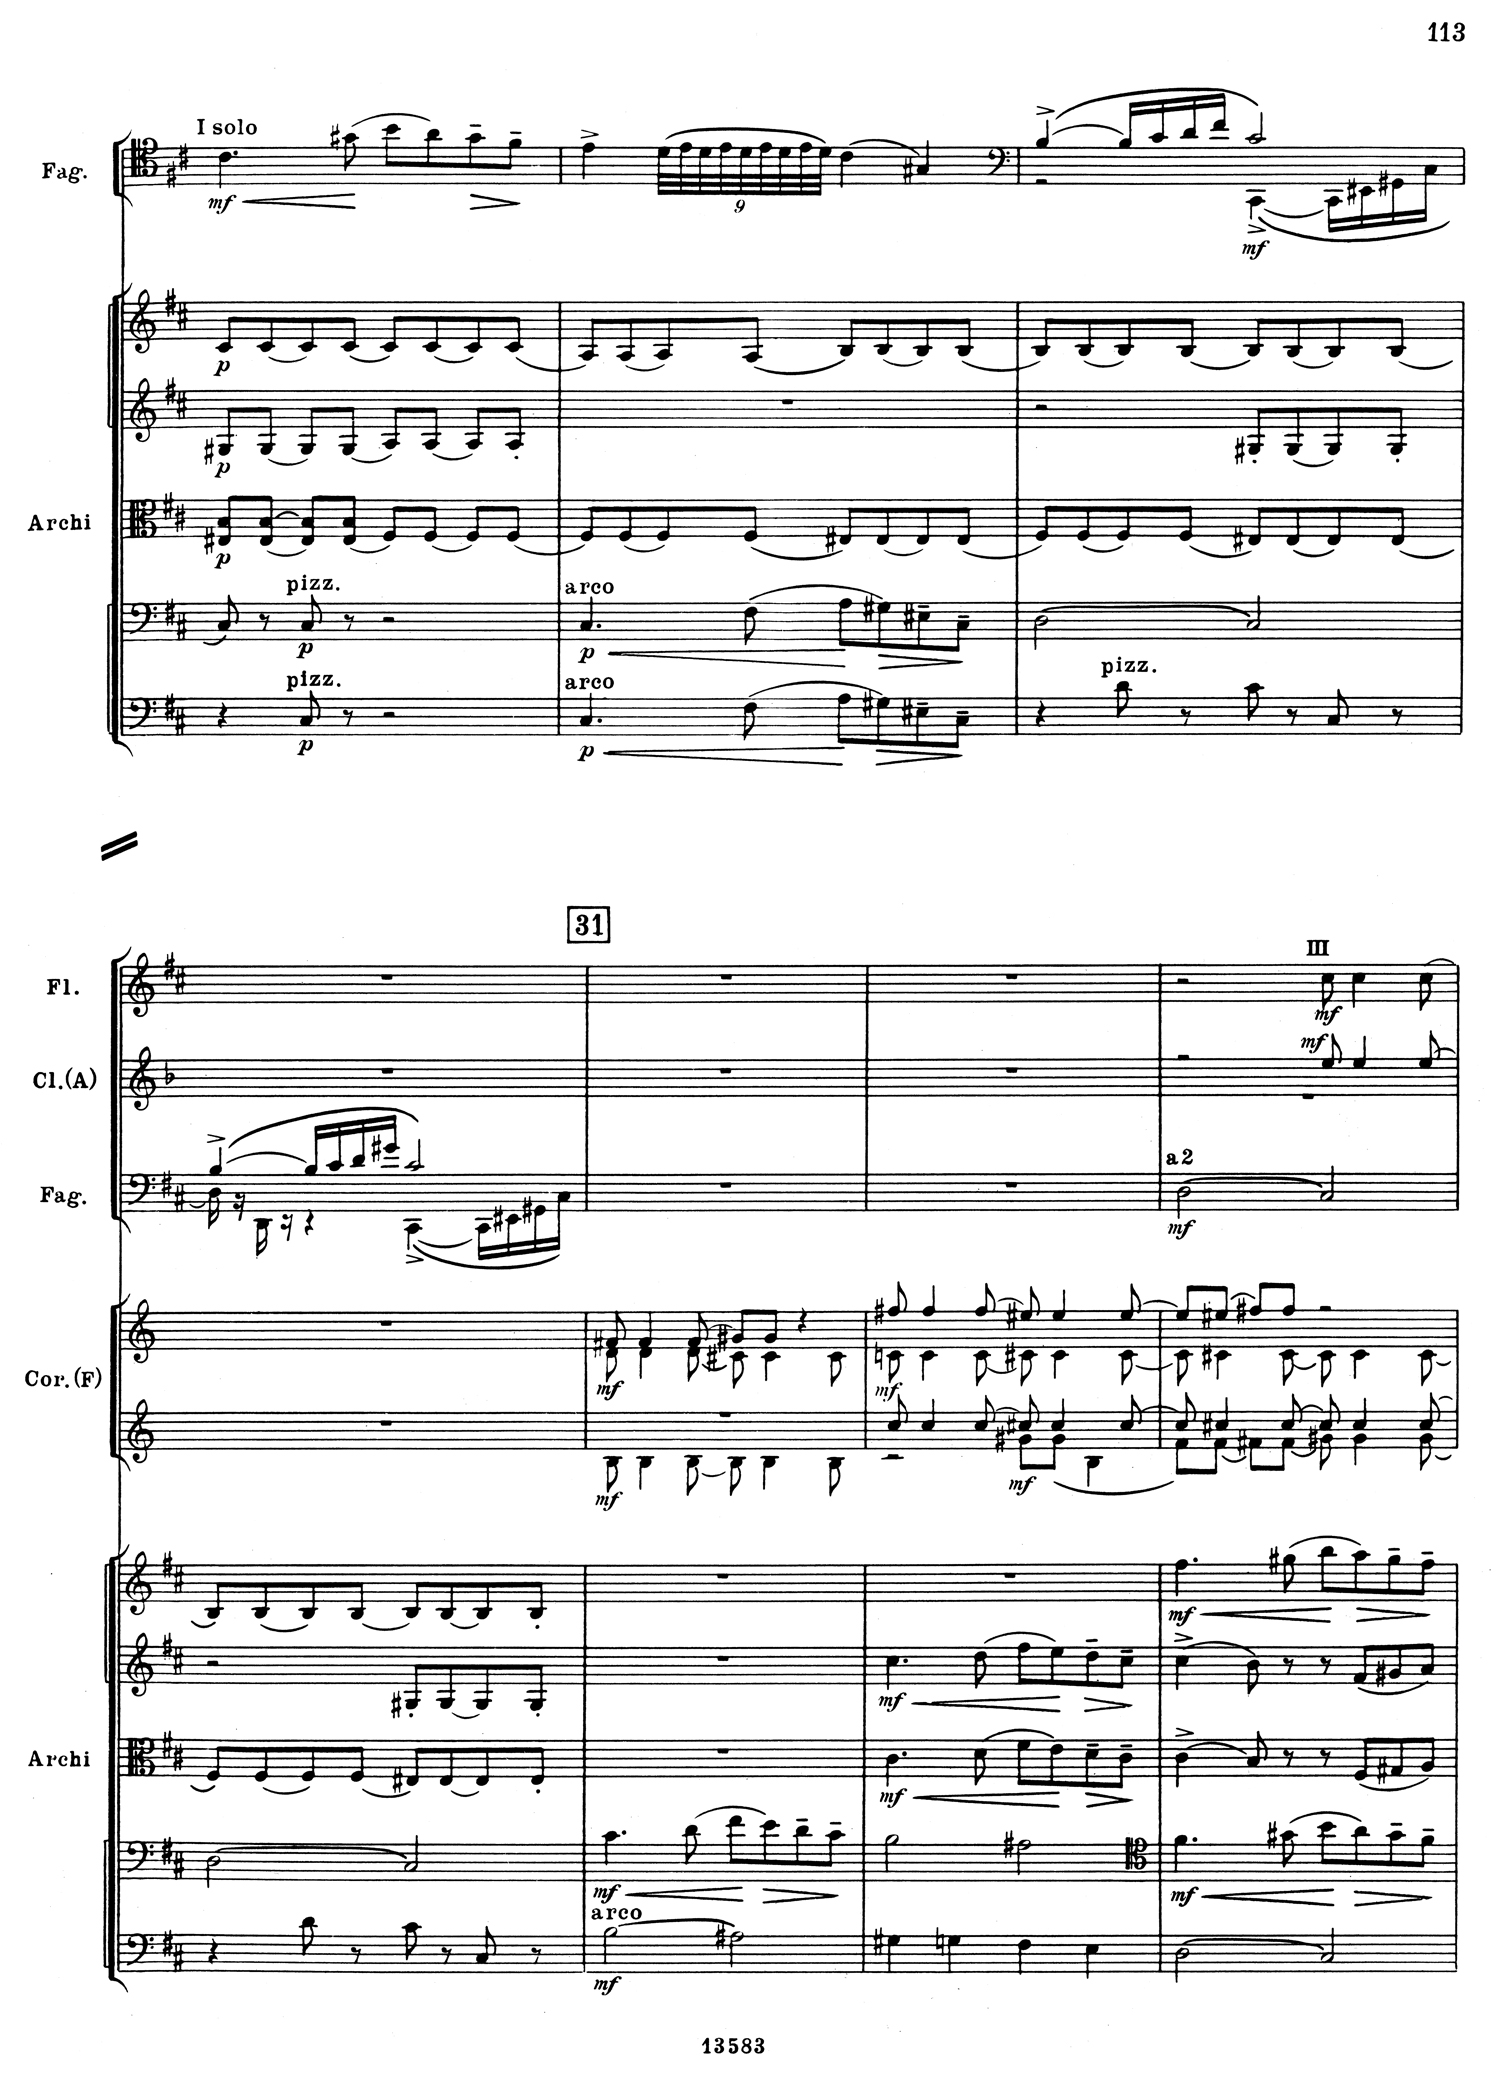 Tchaikovsky 5 Mvt 2 Score 1.jpg